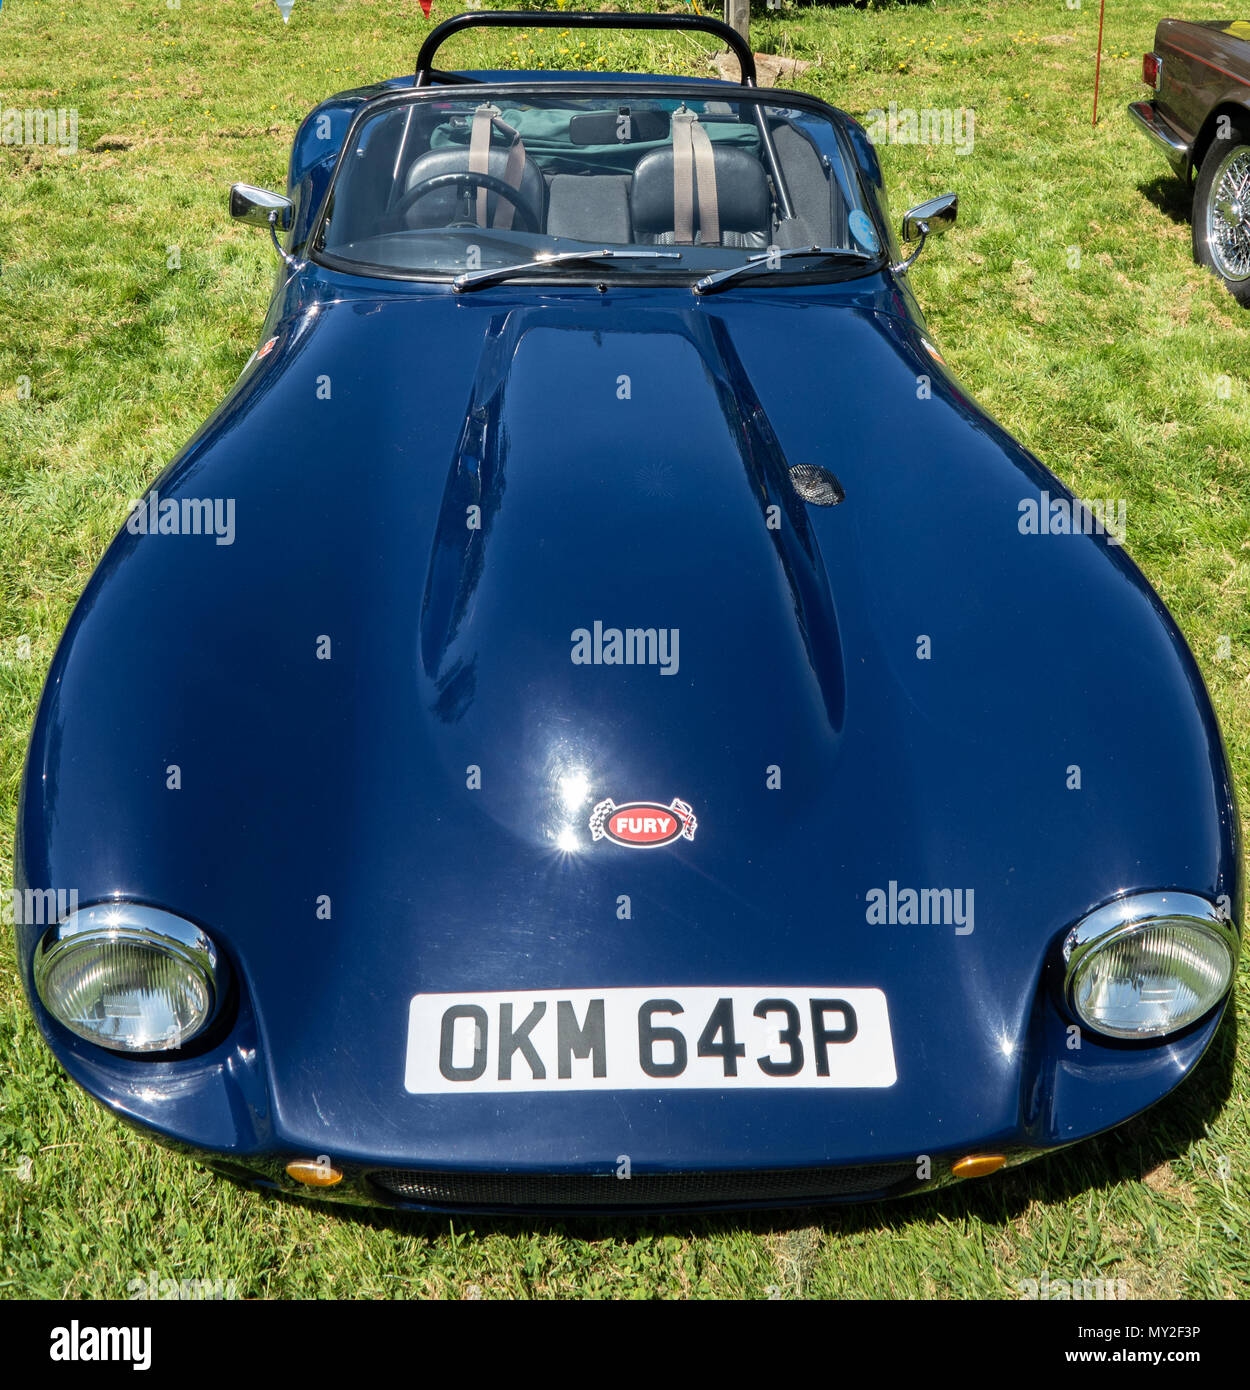 Une voiture bleu Fury sortes, prises sur une voiture classique rencontrez dans le Kent au Royaume-Uni, juin 2018. Banque D'Images